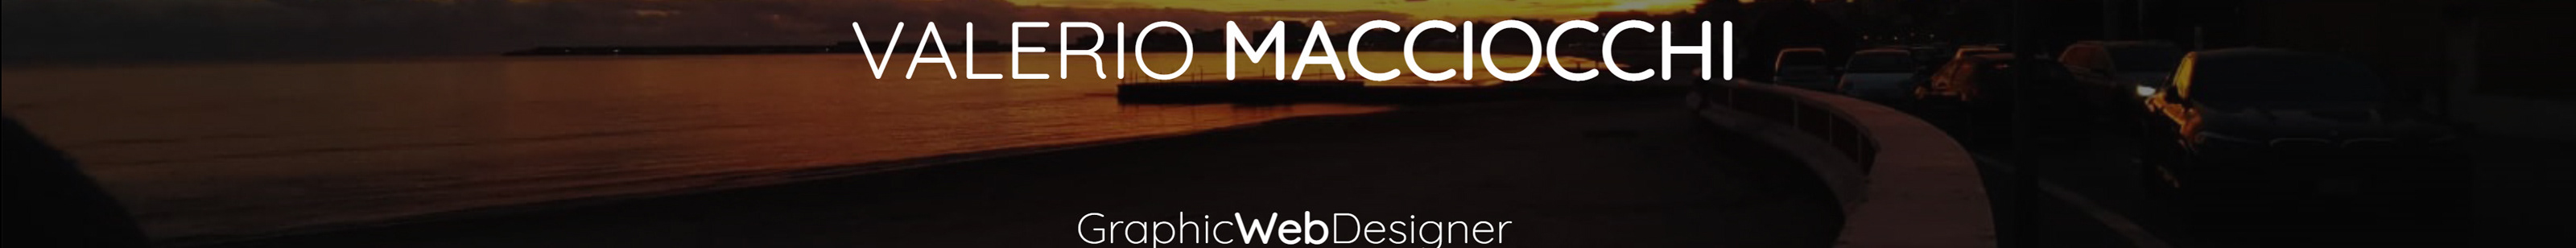 Valerio Macciocchi's profile banner